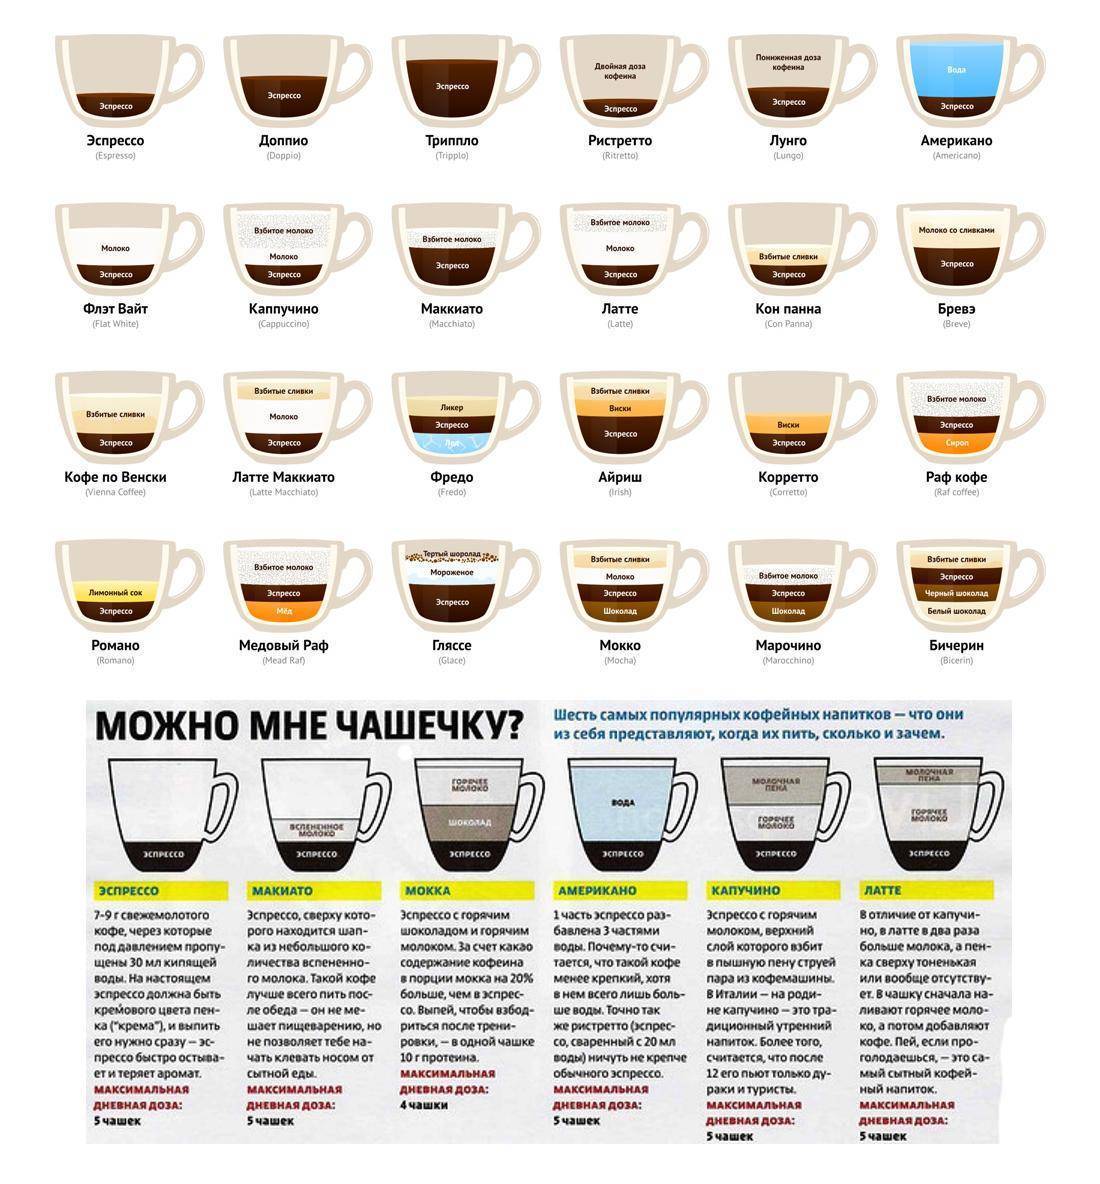 Кофе хорош от похмелья? как кофеин влияет на вас?